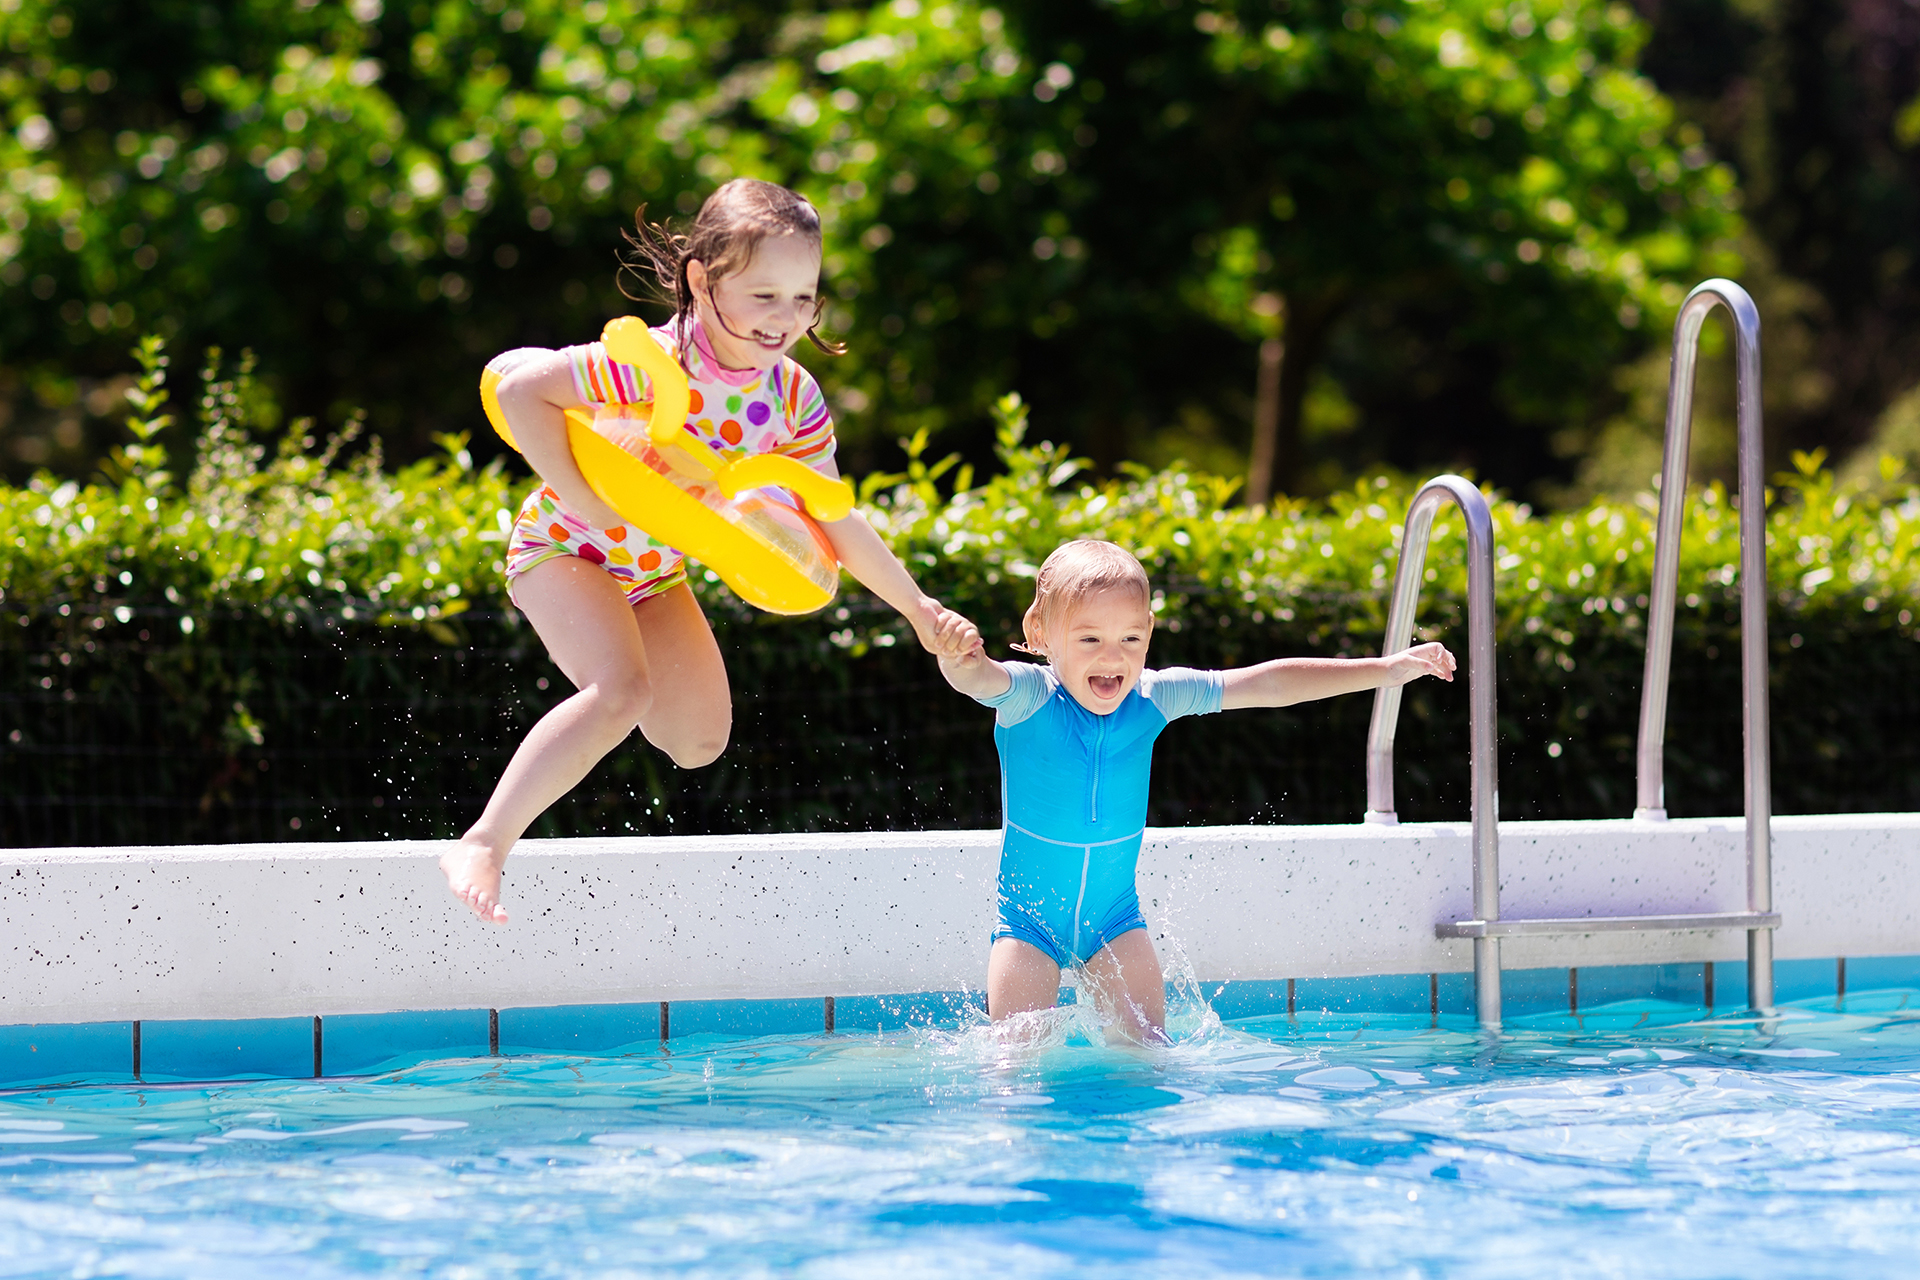 "Quienes presentan mayor riesgo de ahogamiento por inmersión son los niños menores de cinco años" (Getty)